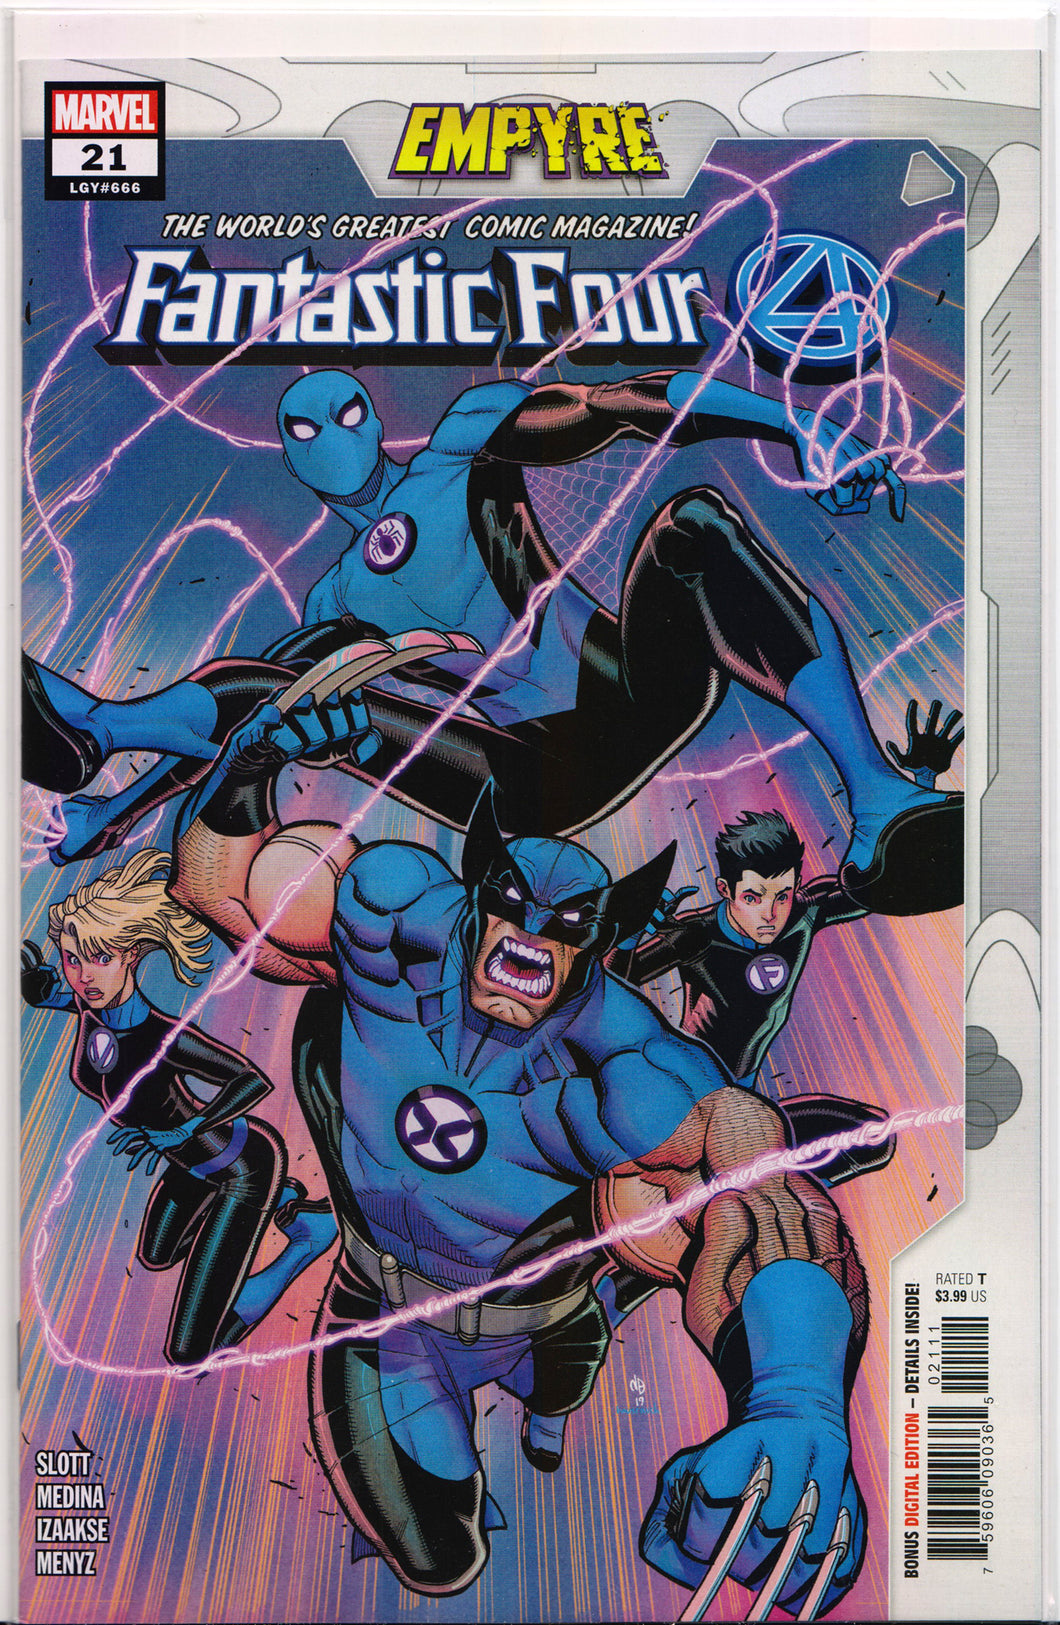 FANTASTIC FOUR #21 (EMPYRE)(2020) Comic Book ~ Marvel Comics